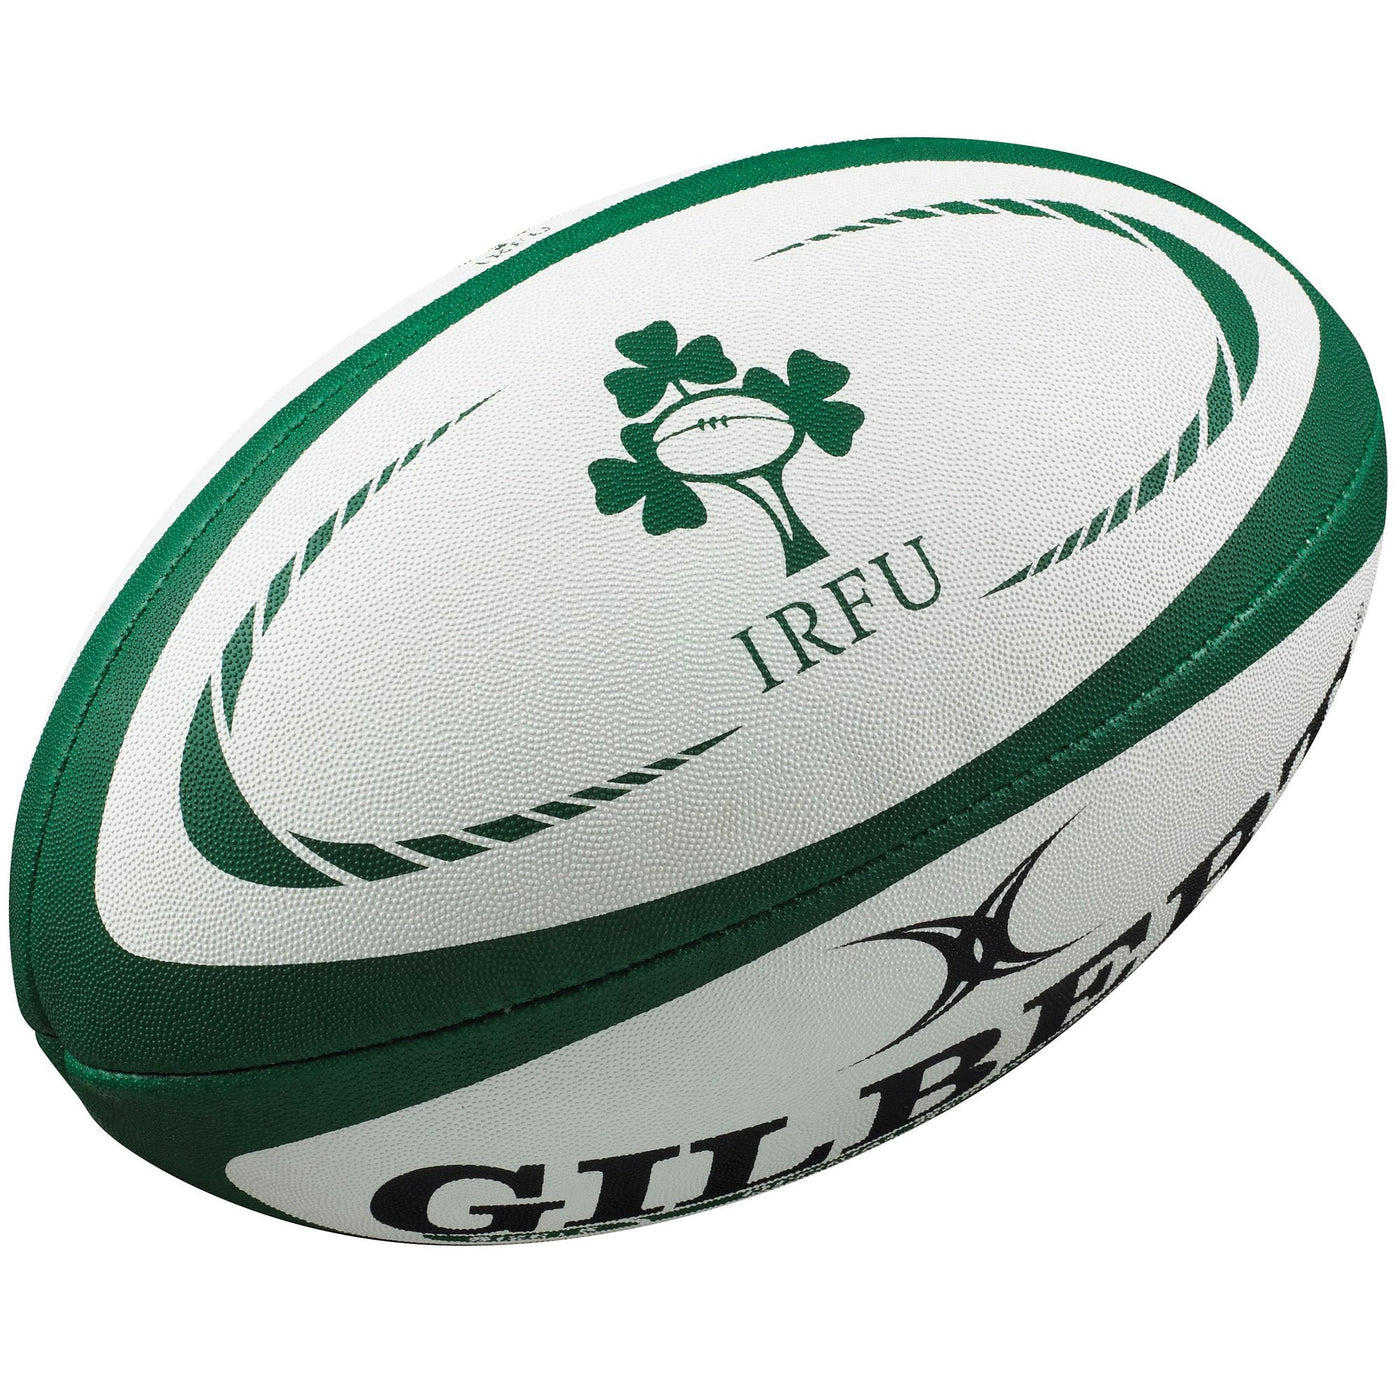 Ballon de Rugby Réplique Irlande Taille 5